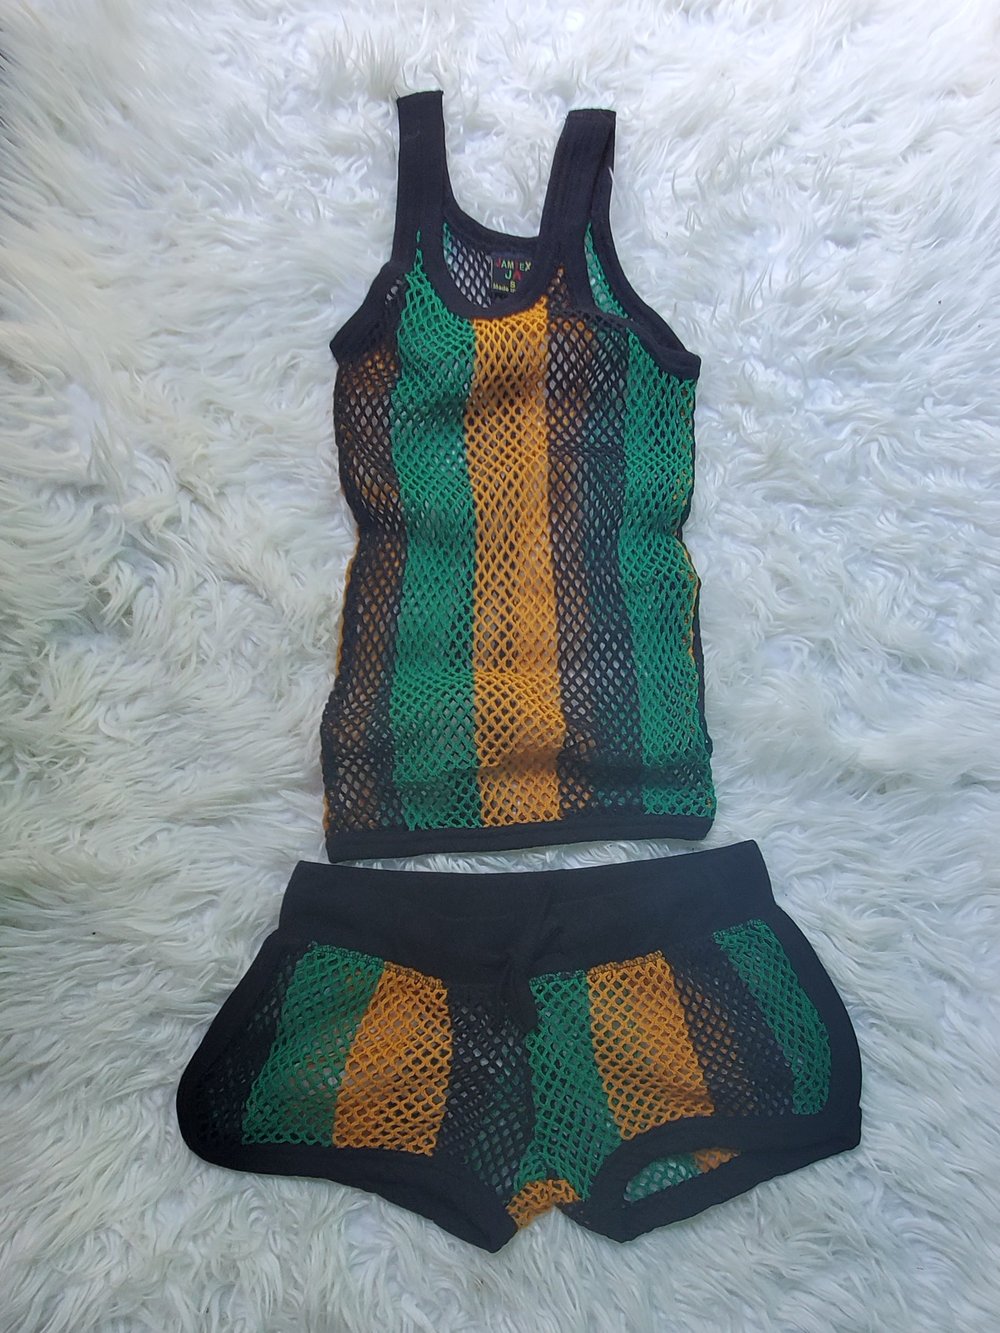  Jamaica fishnet shorts set 